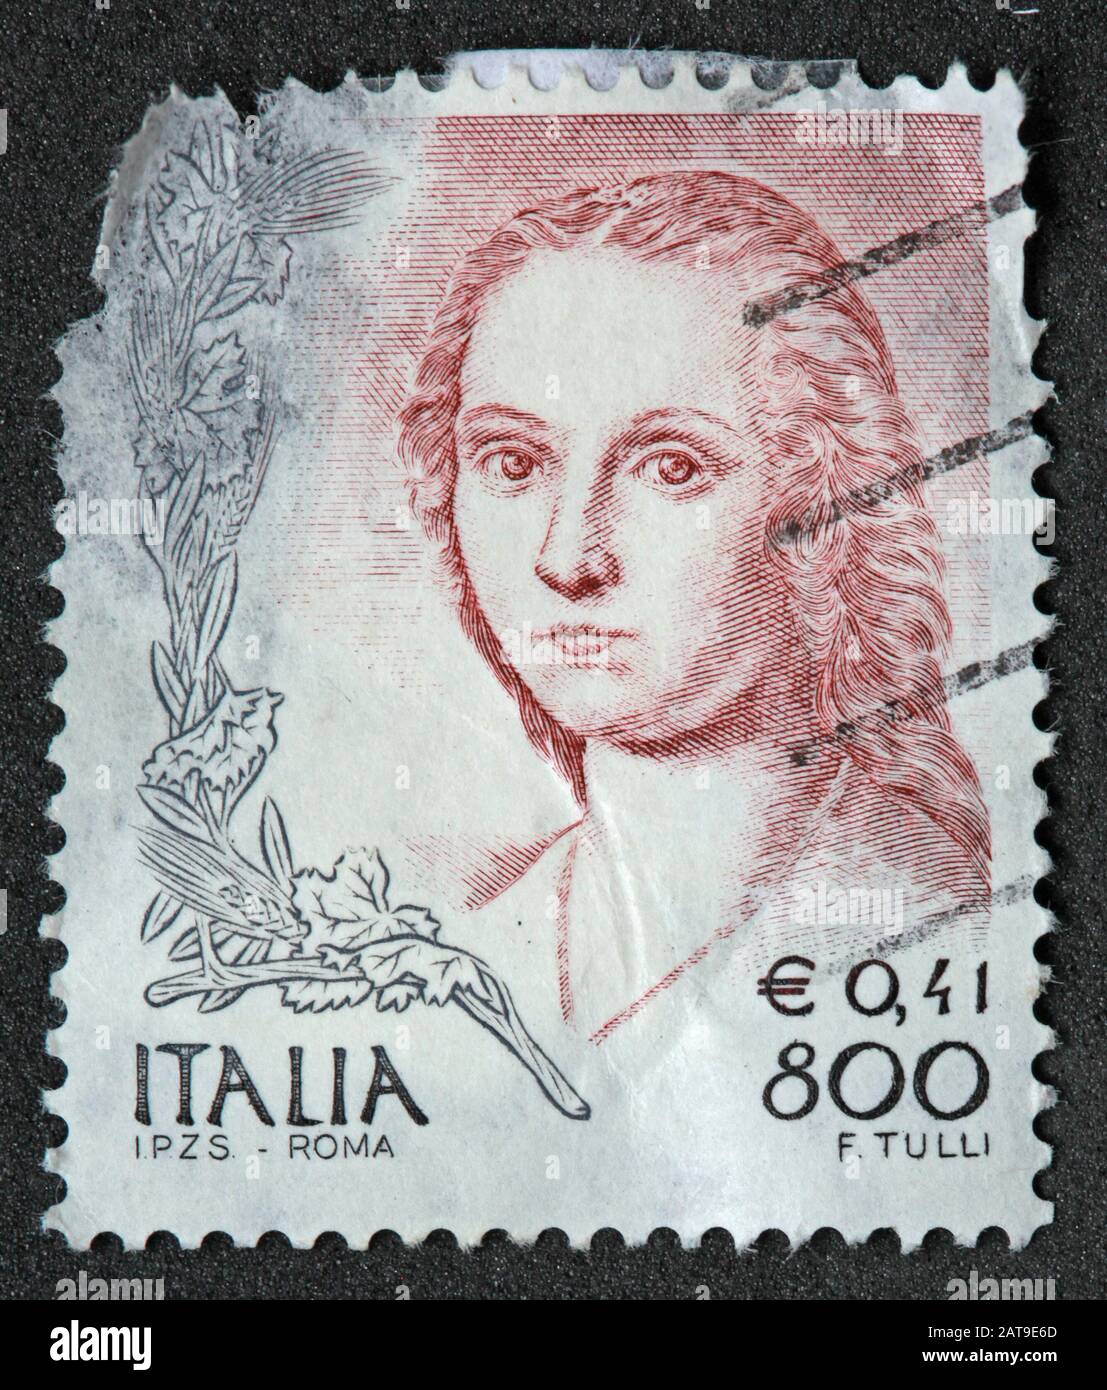 Timbre italien, poste Italia utilisé et franked Stamp, E0.41 - 800 L f tulli, Stamp Italia Banque D'Images